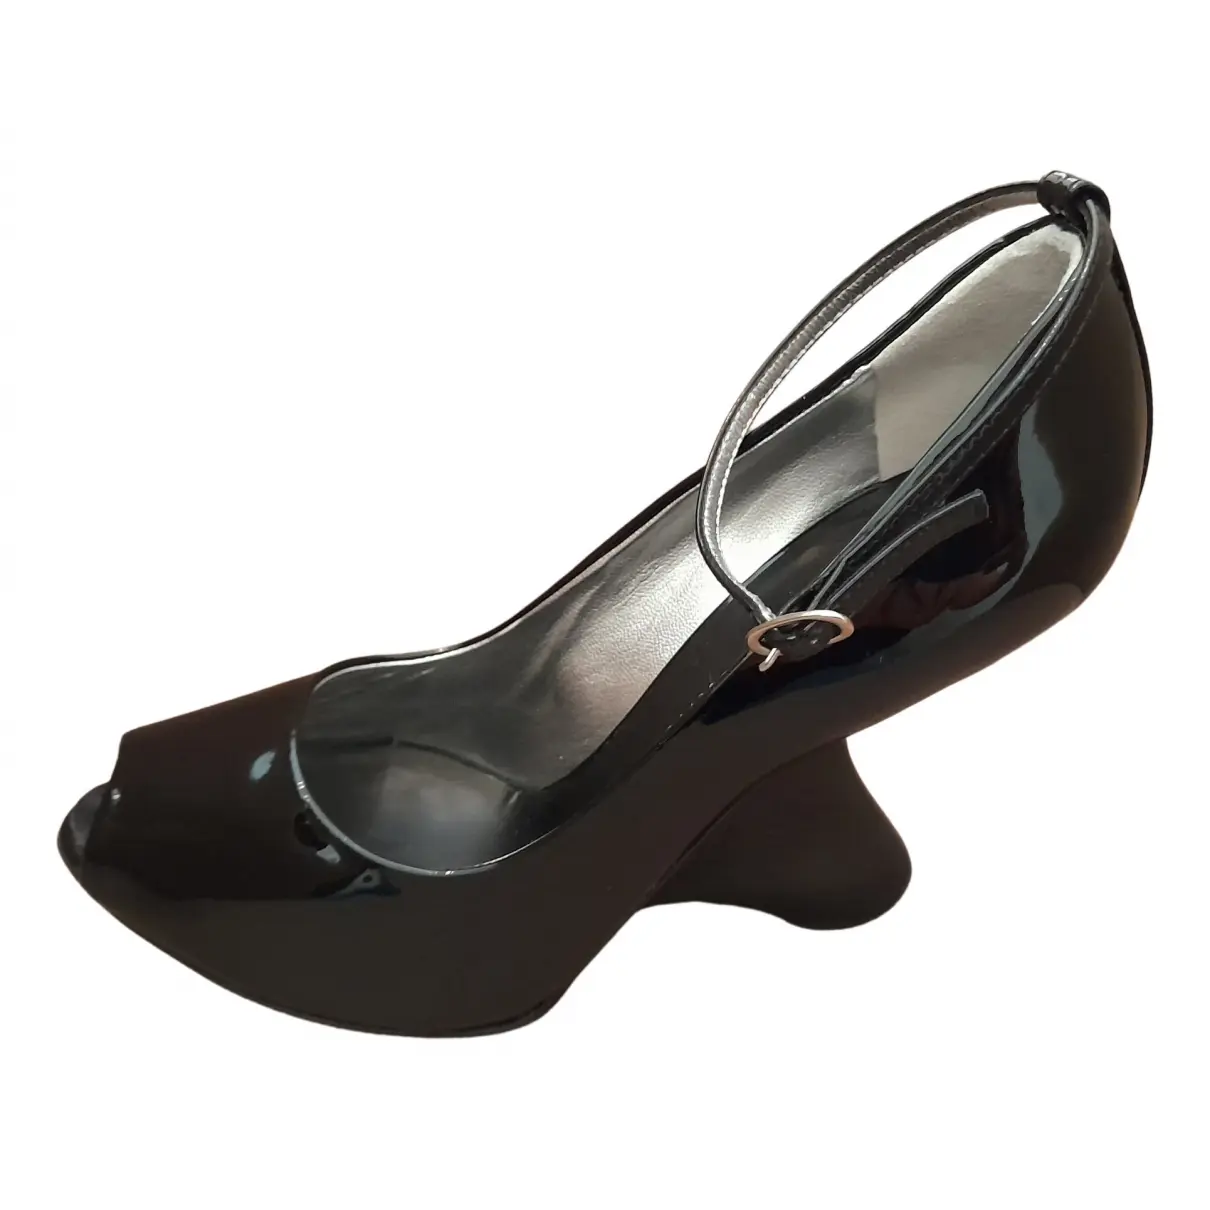 Patent leather heels Giuseppe Zanotti